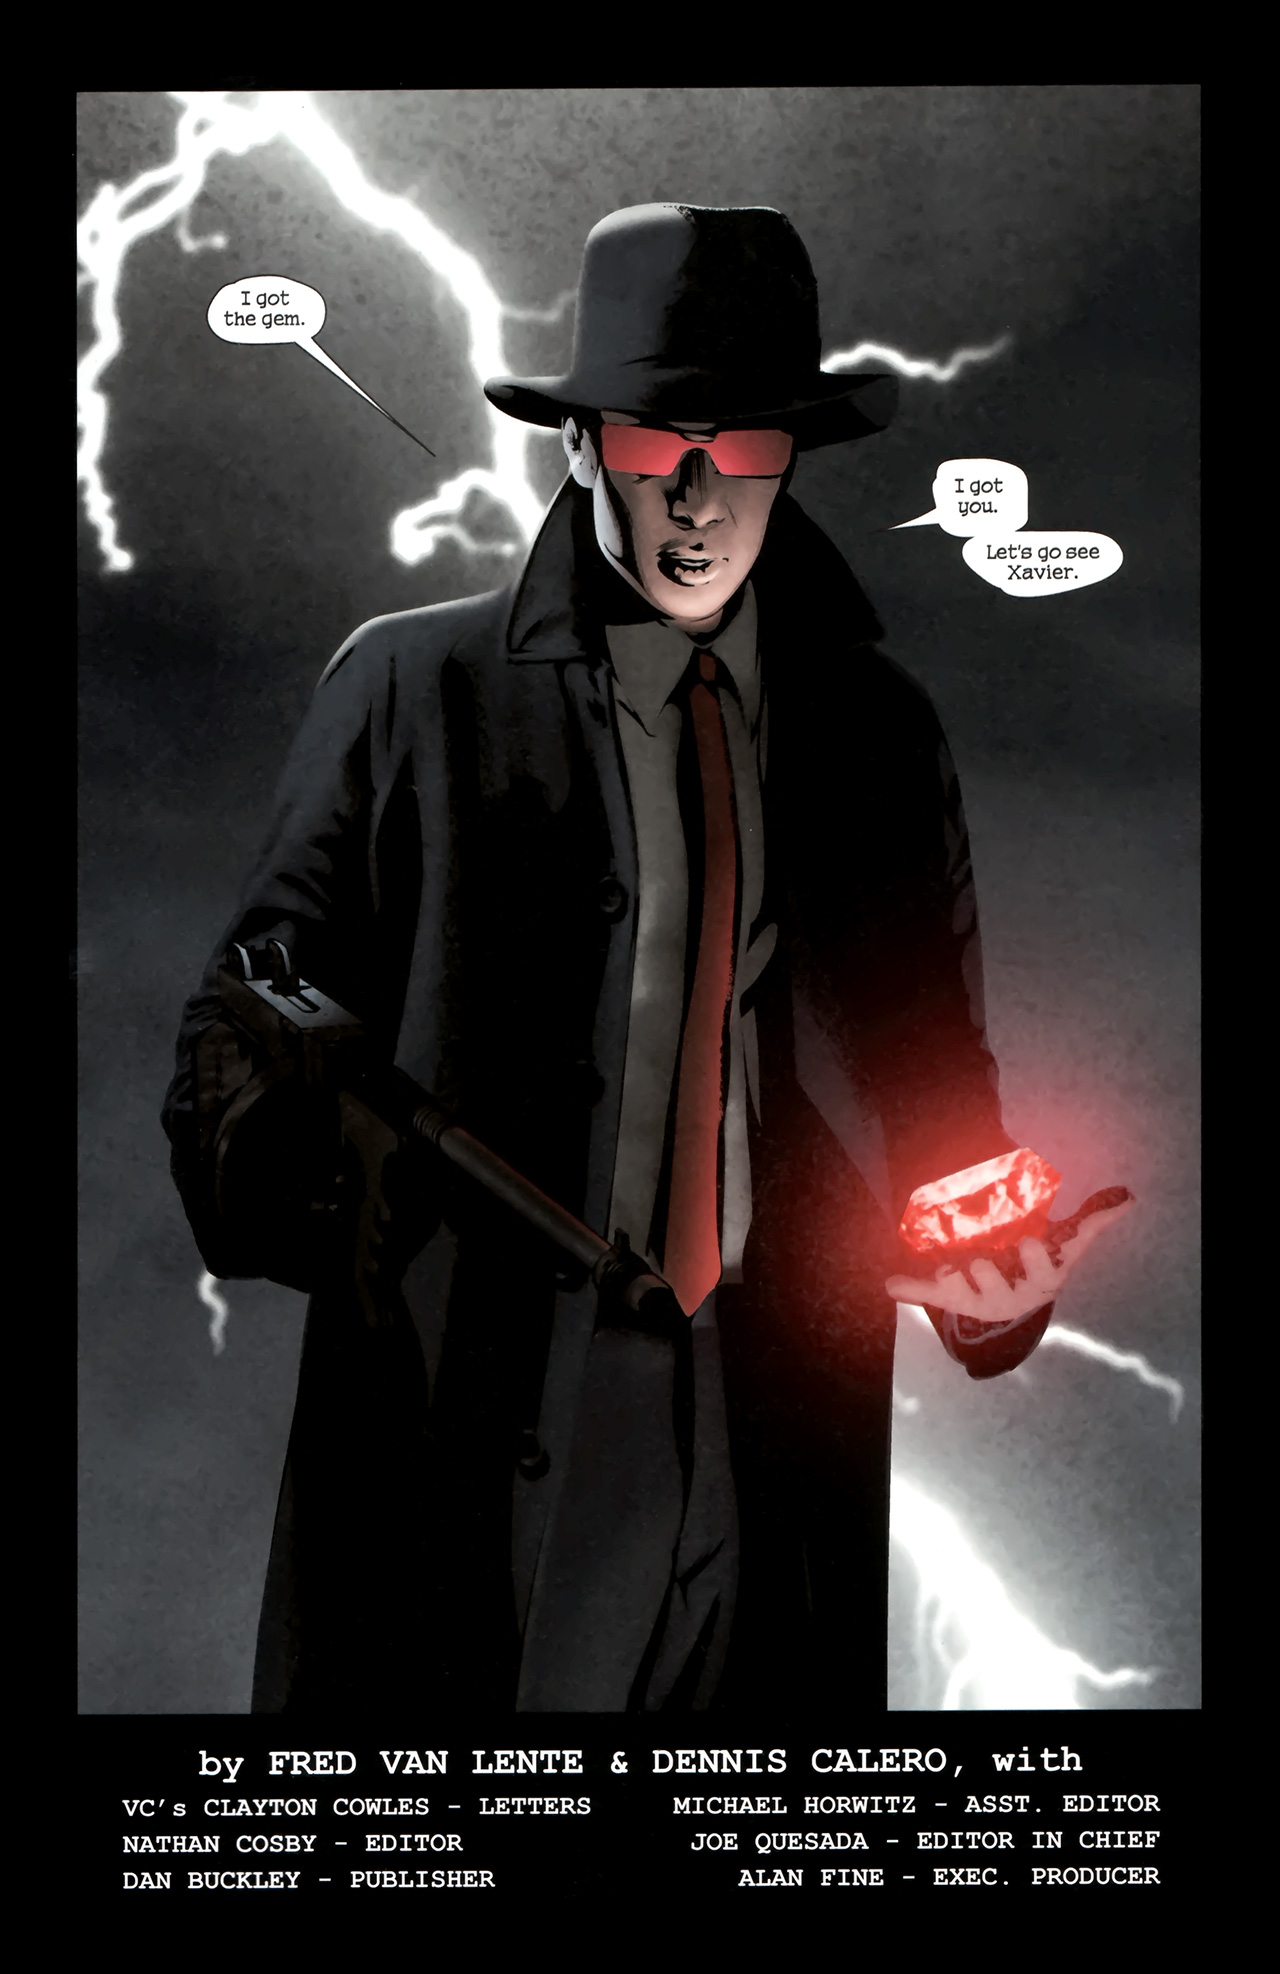 X-Men Noir Mark Of Cain #4 (of 4) 